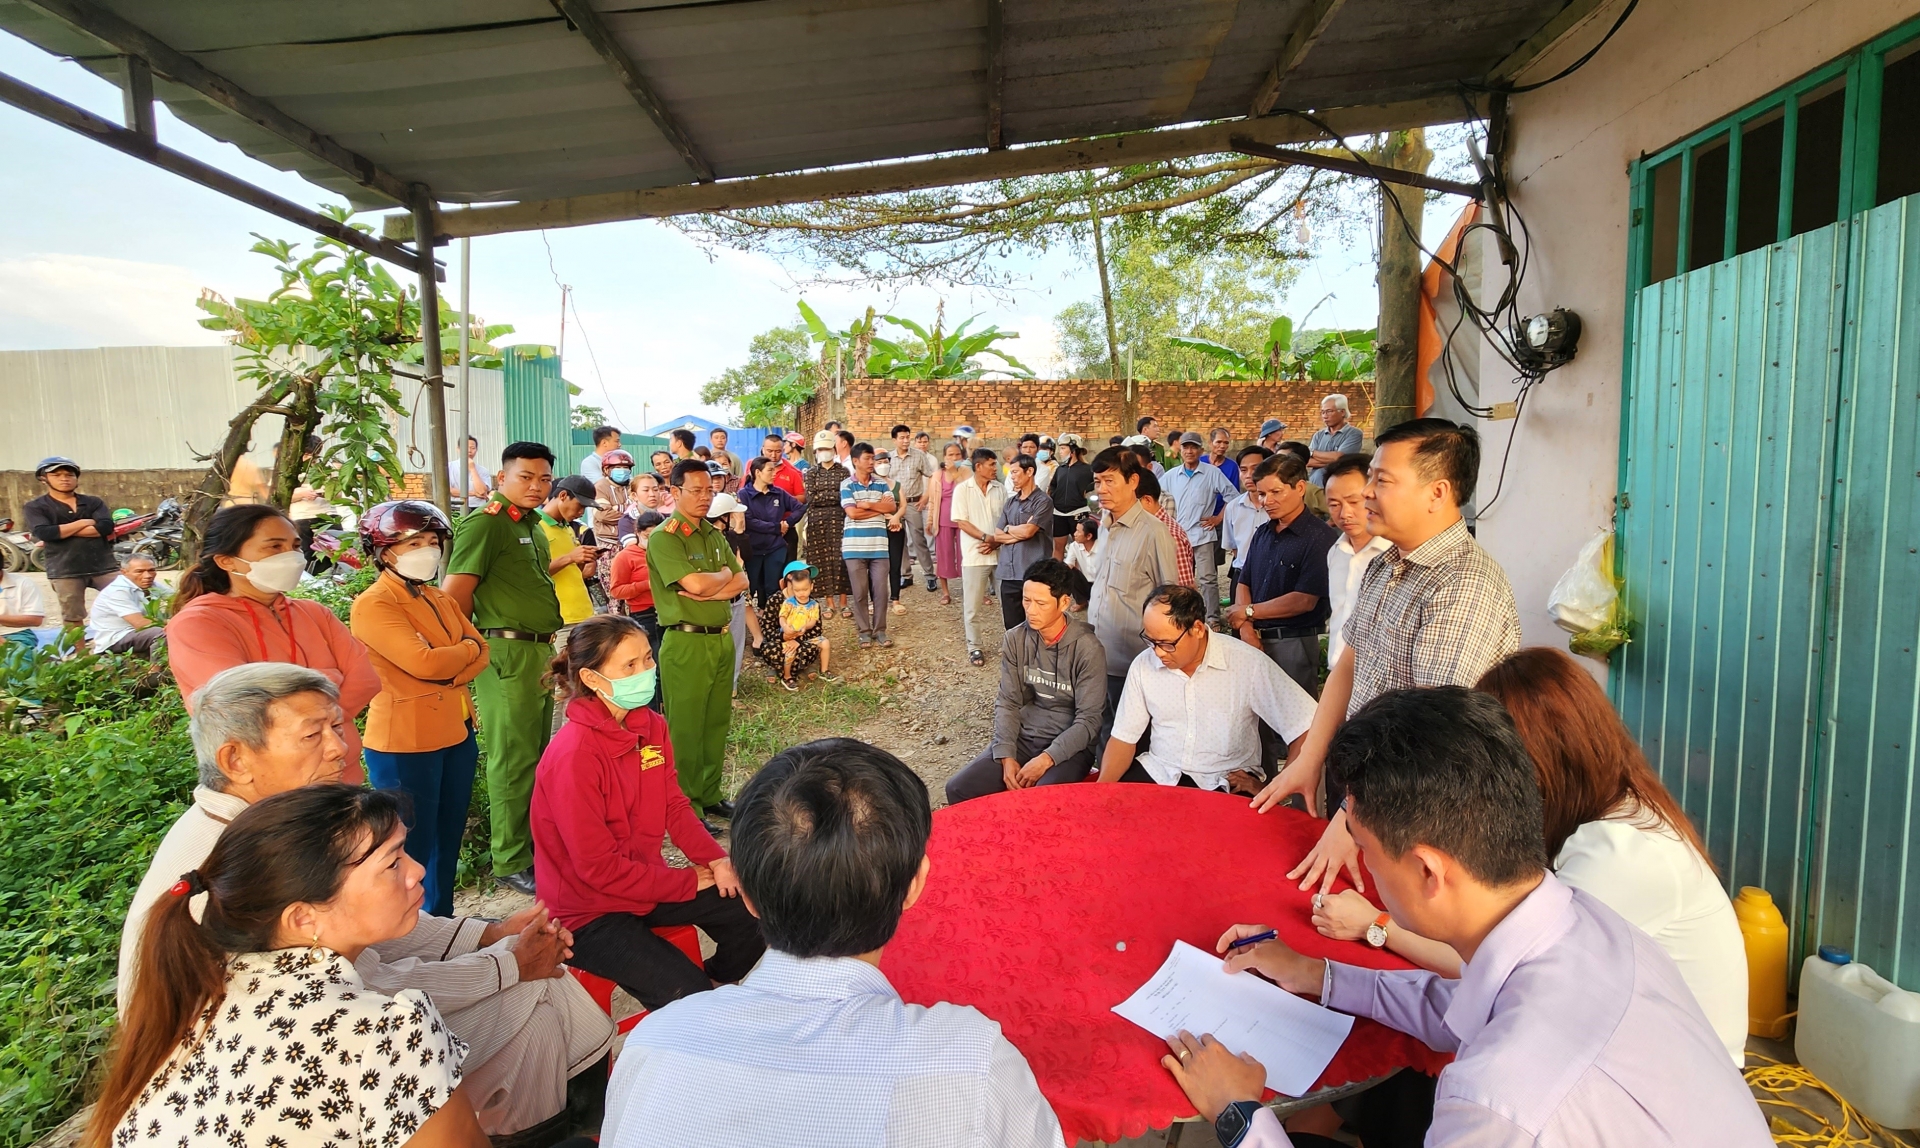 Chủ tịch UBND huyện Đạ Tẻh Tống Giang Nam cùng lãnh đạo địa phương tổ chức đối thoại với người dân khi xảy ra vụ việc bà con chặn xe chở cám vào trại heo để phản đối ô nhiễm vào ngày 22/11 vừa qua